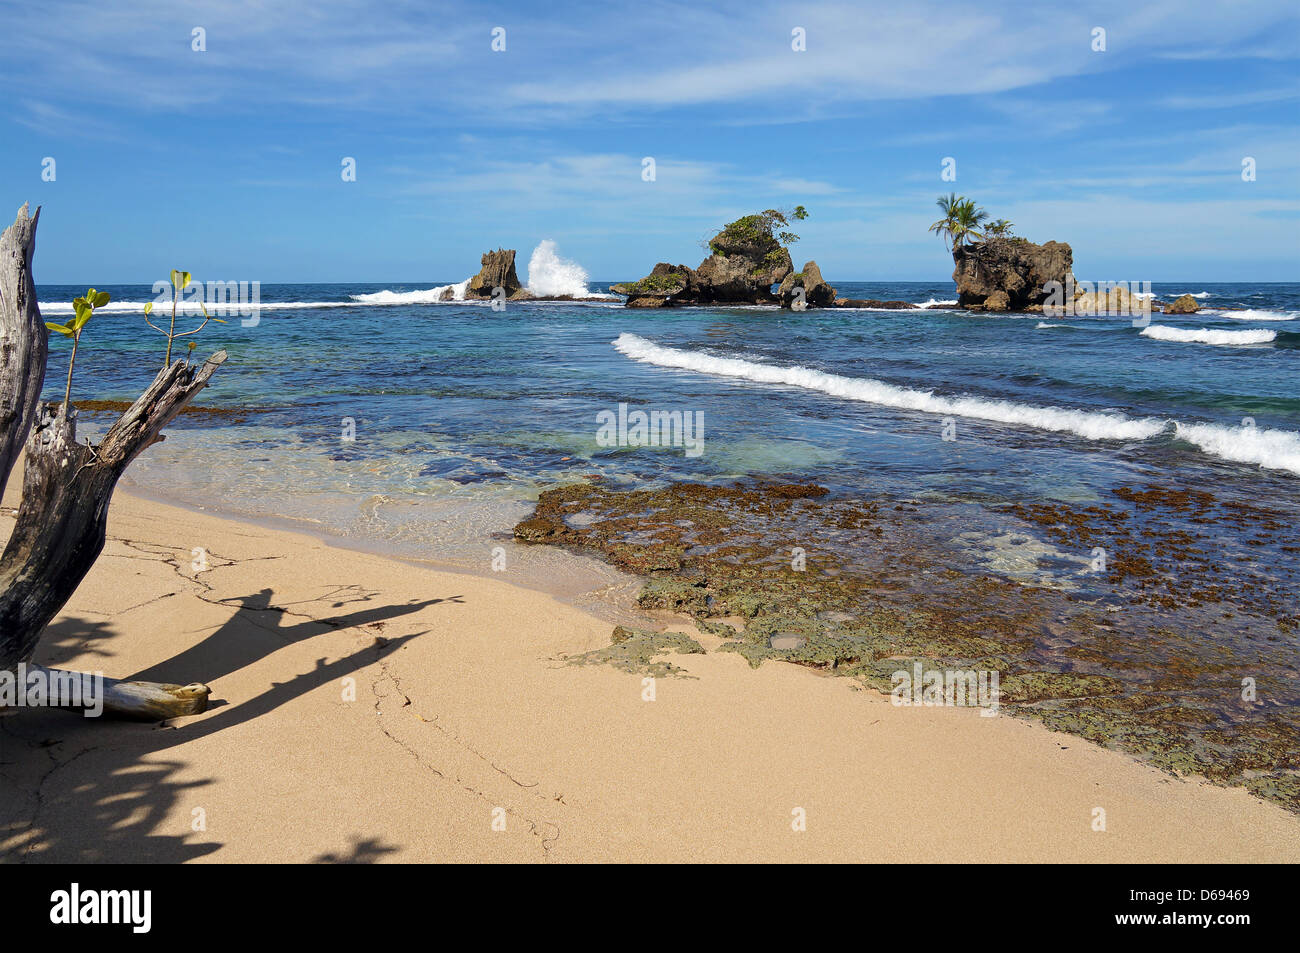 Spiaggia tropicale con onde che si infrangono sulle isolette rocciose, Mar dei Caraibi, Bocas del Toro, Panama Foto Stock